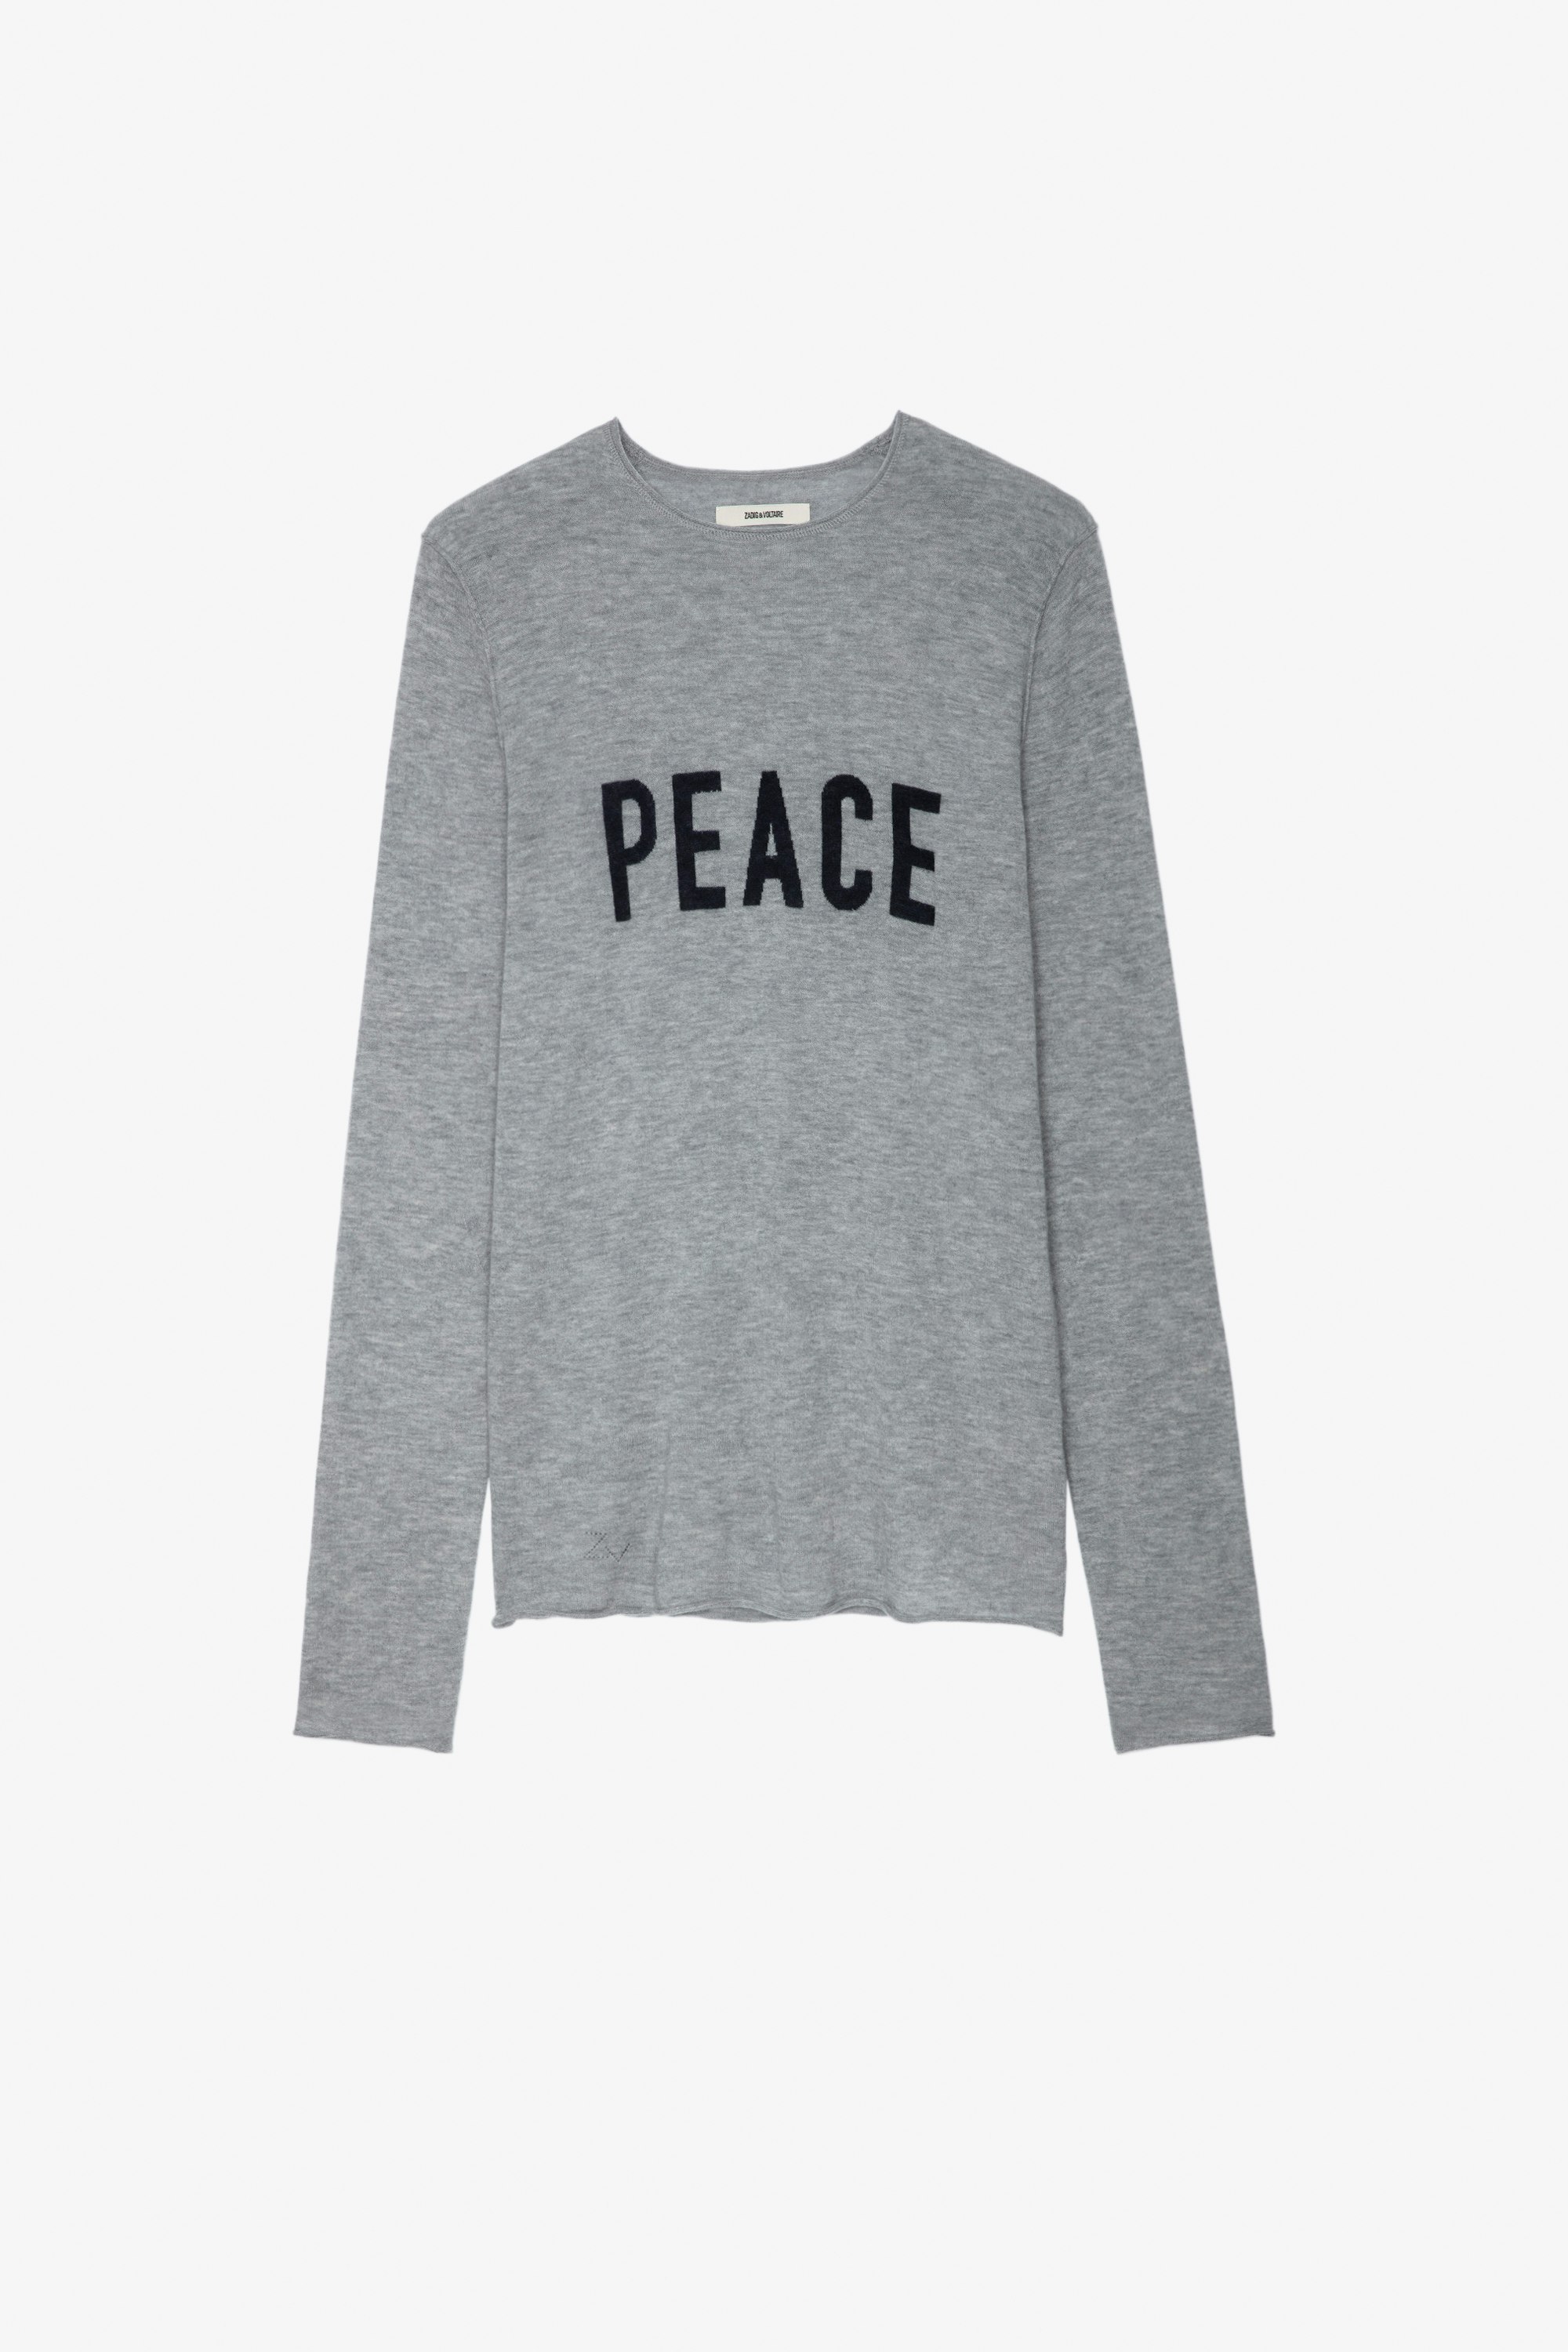 Maglione Teiss Maglione in cachemire grigio screziato girocollo con maniche lunghe e scritta "Peace" - Uomo